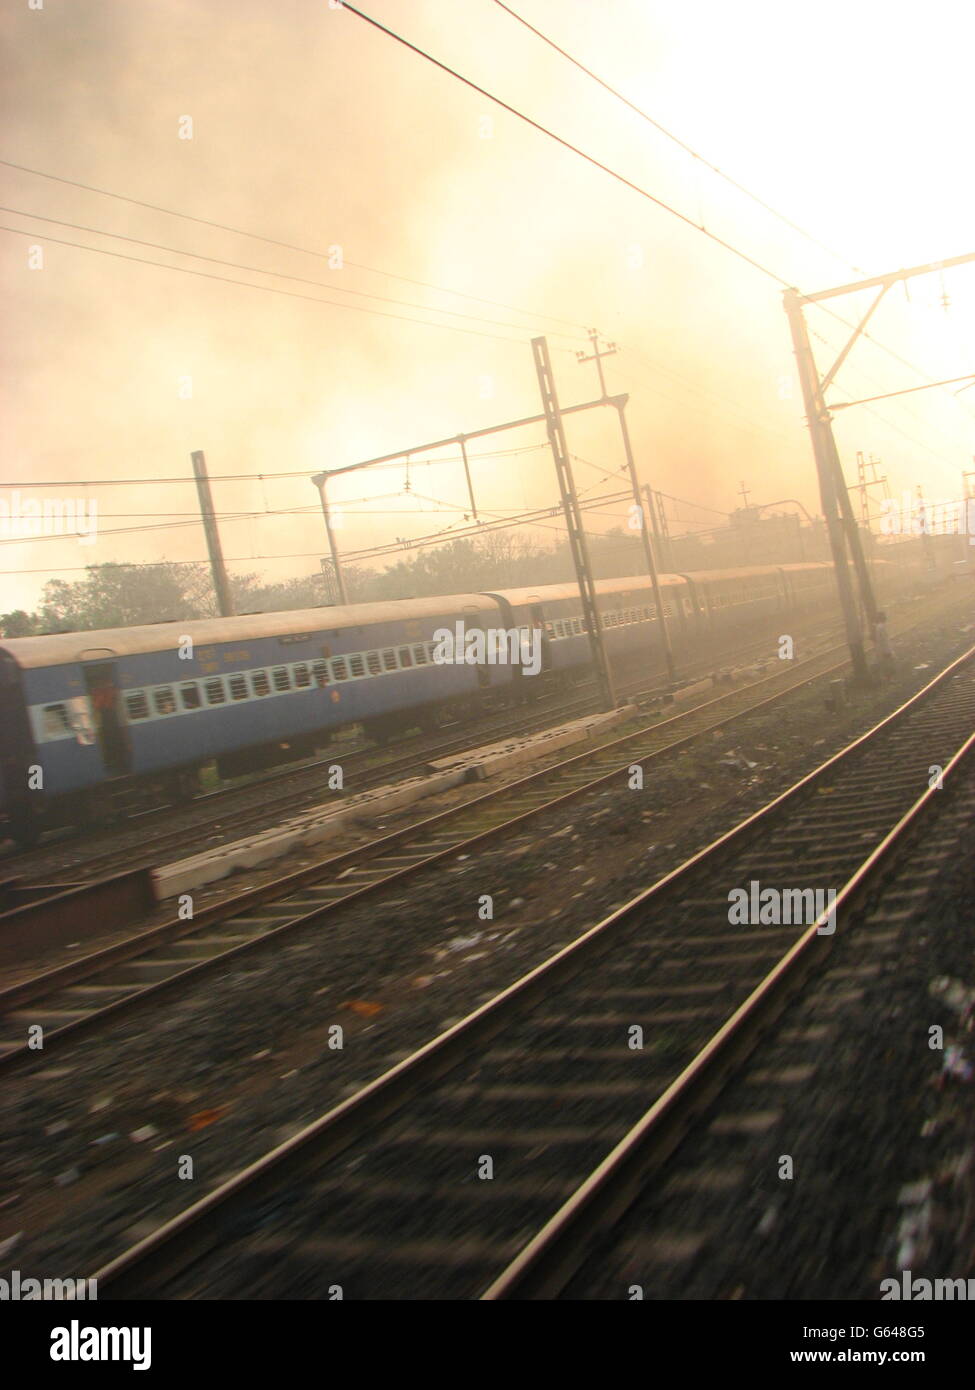 Railway dawn in India Stock Photo